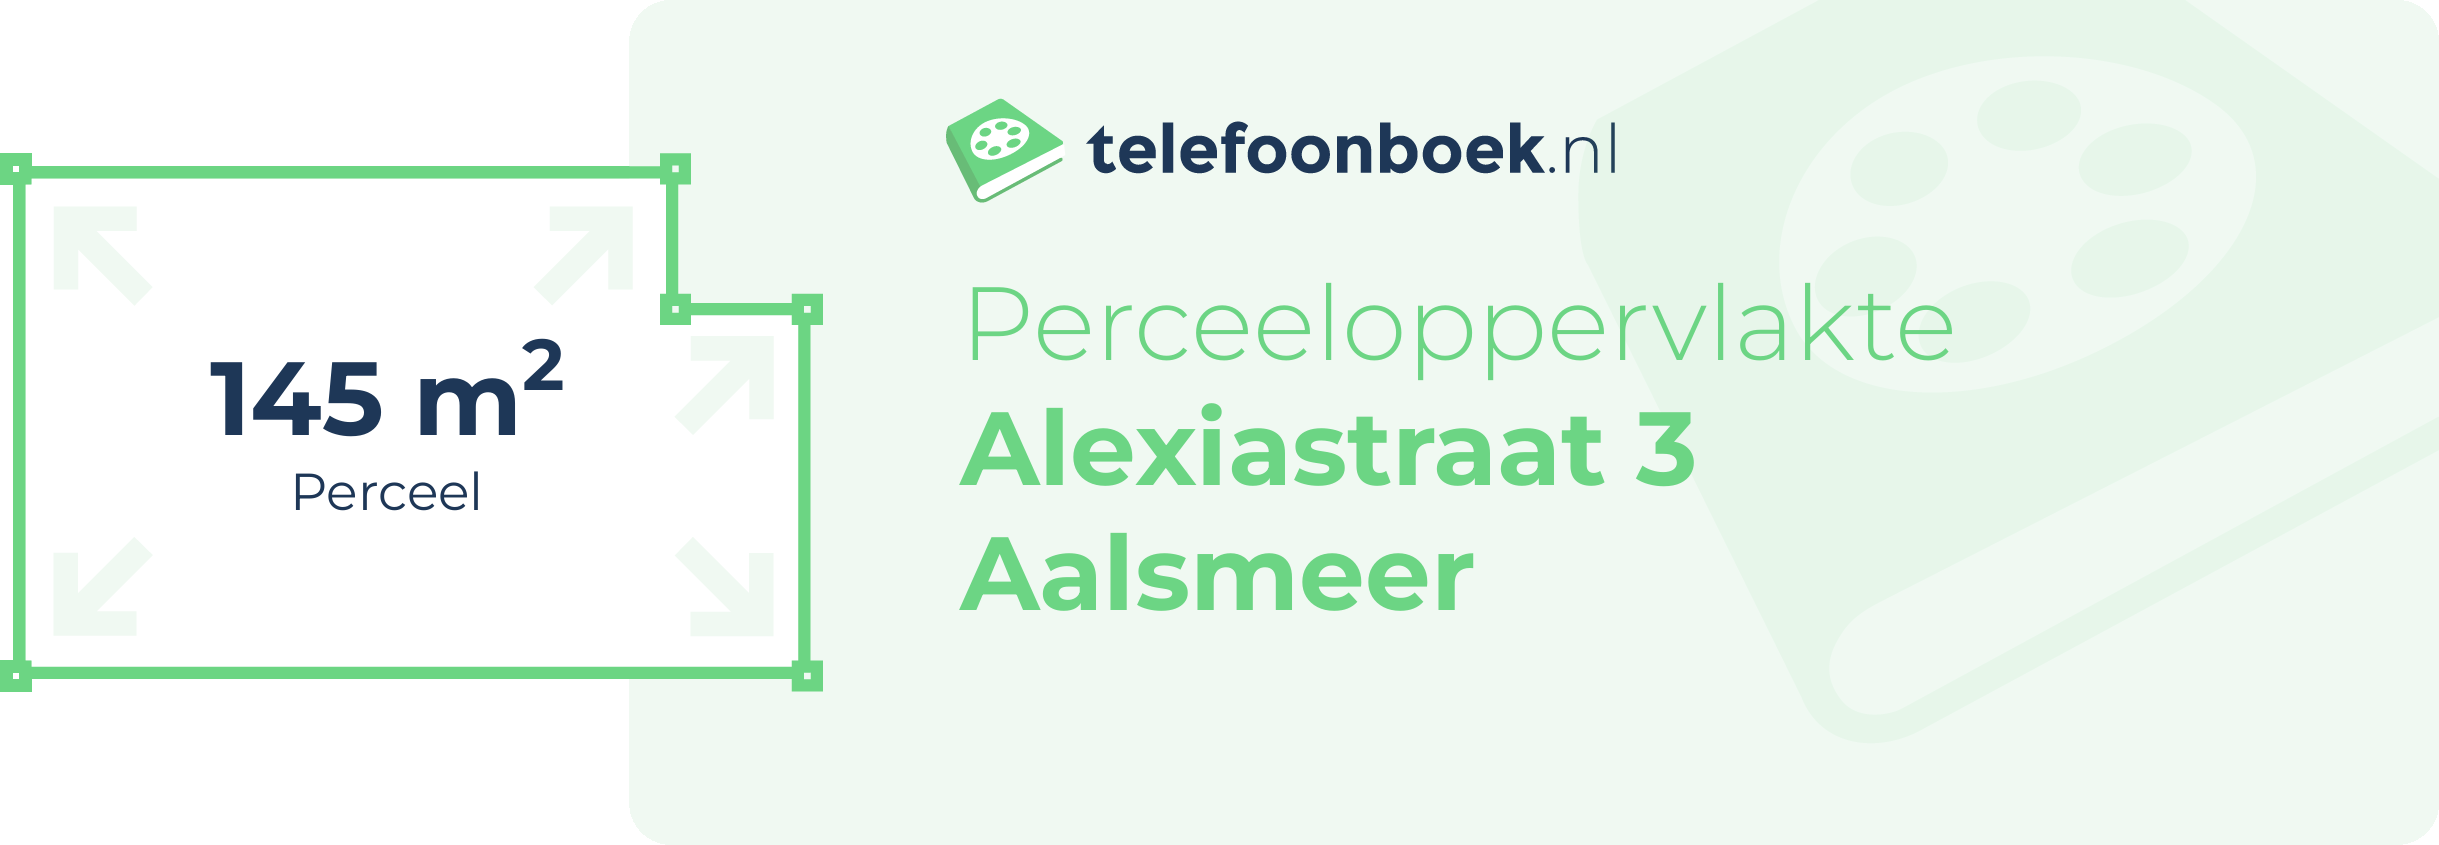 Perceeloppervlakte Alexiastraat 3 Aalsmeer